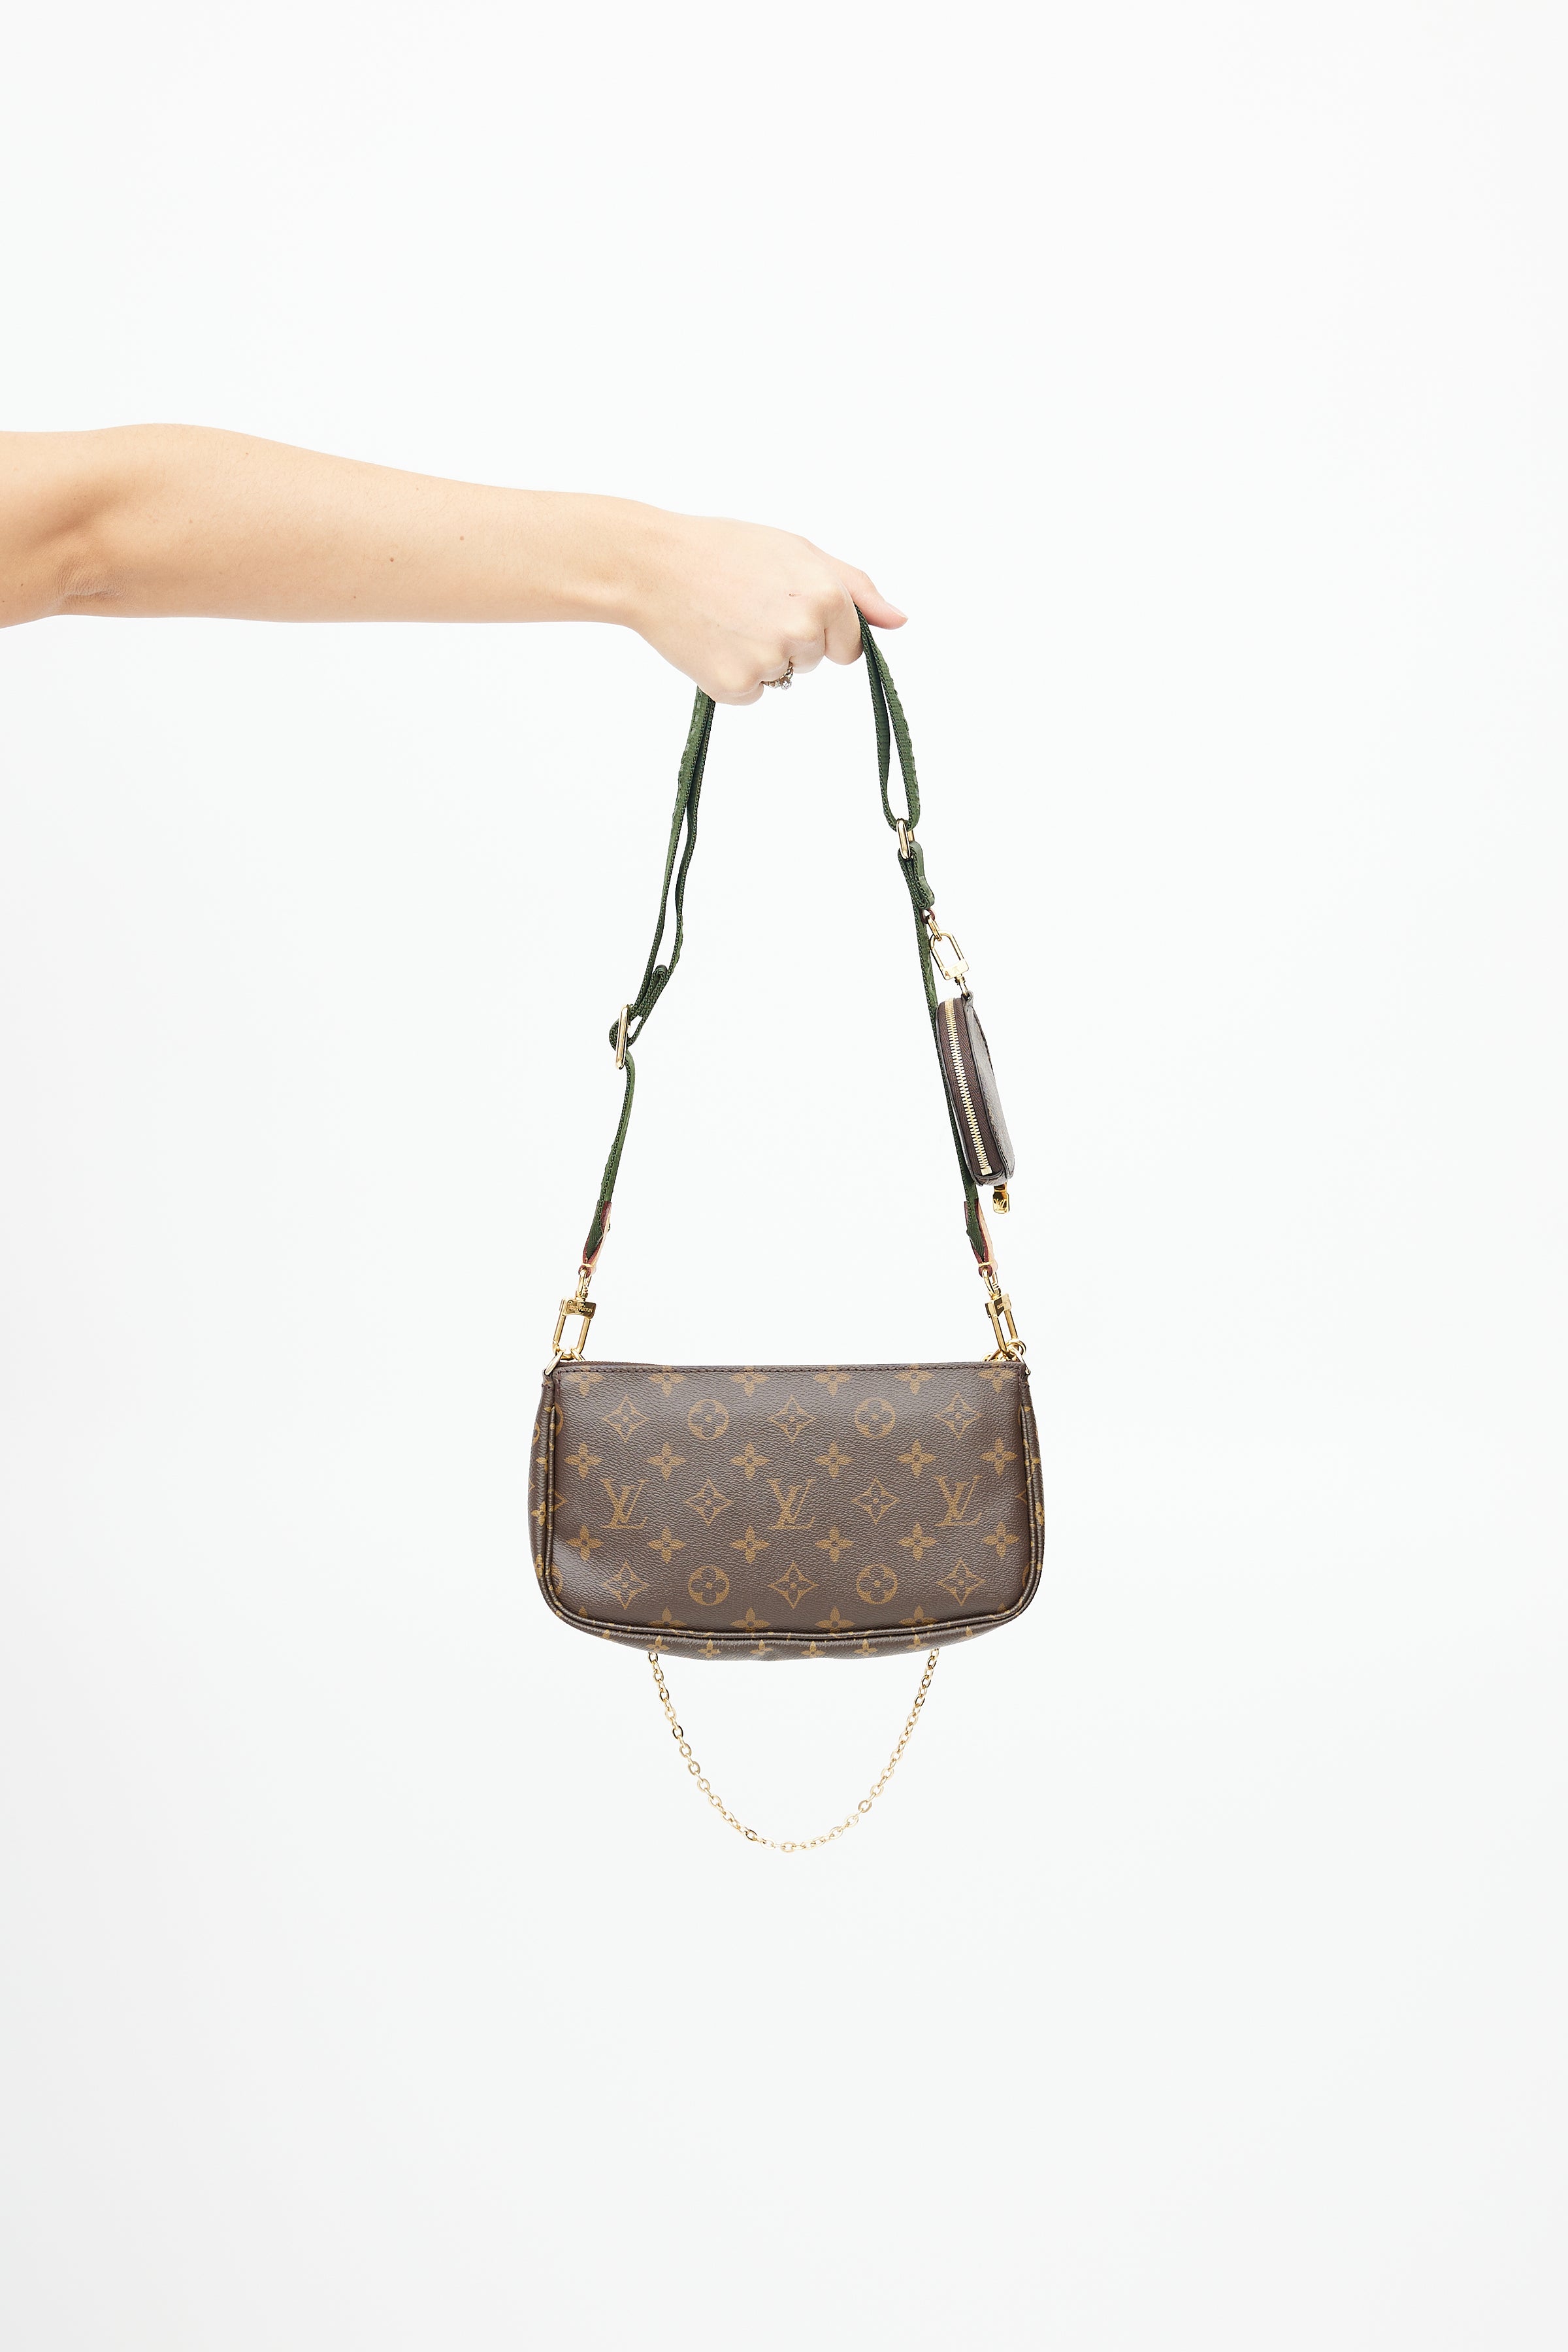 Louis Vuitton 2020 pre-owned Pochette Accessoires Shoulder Bag - Farfetch